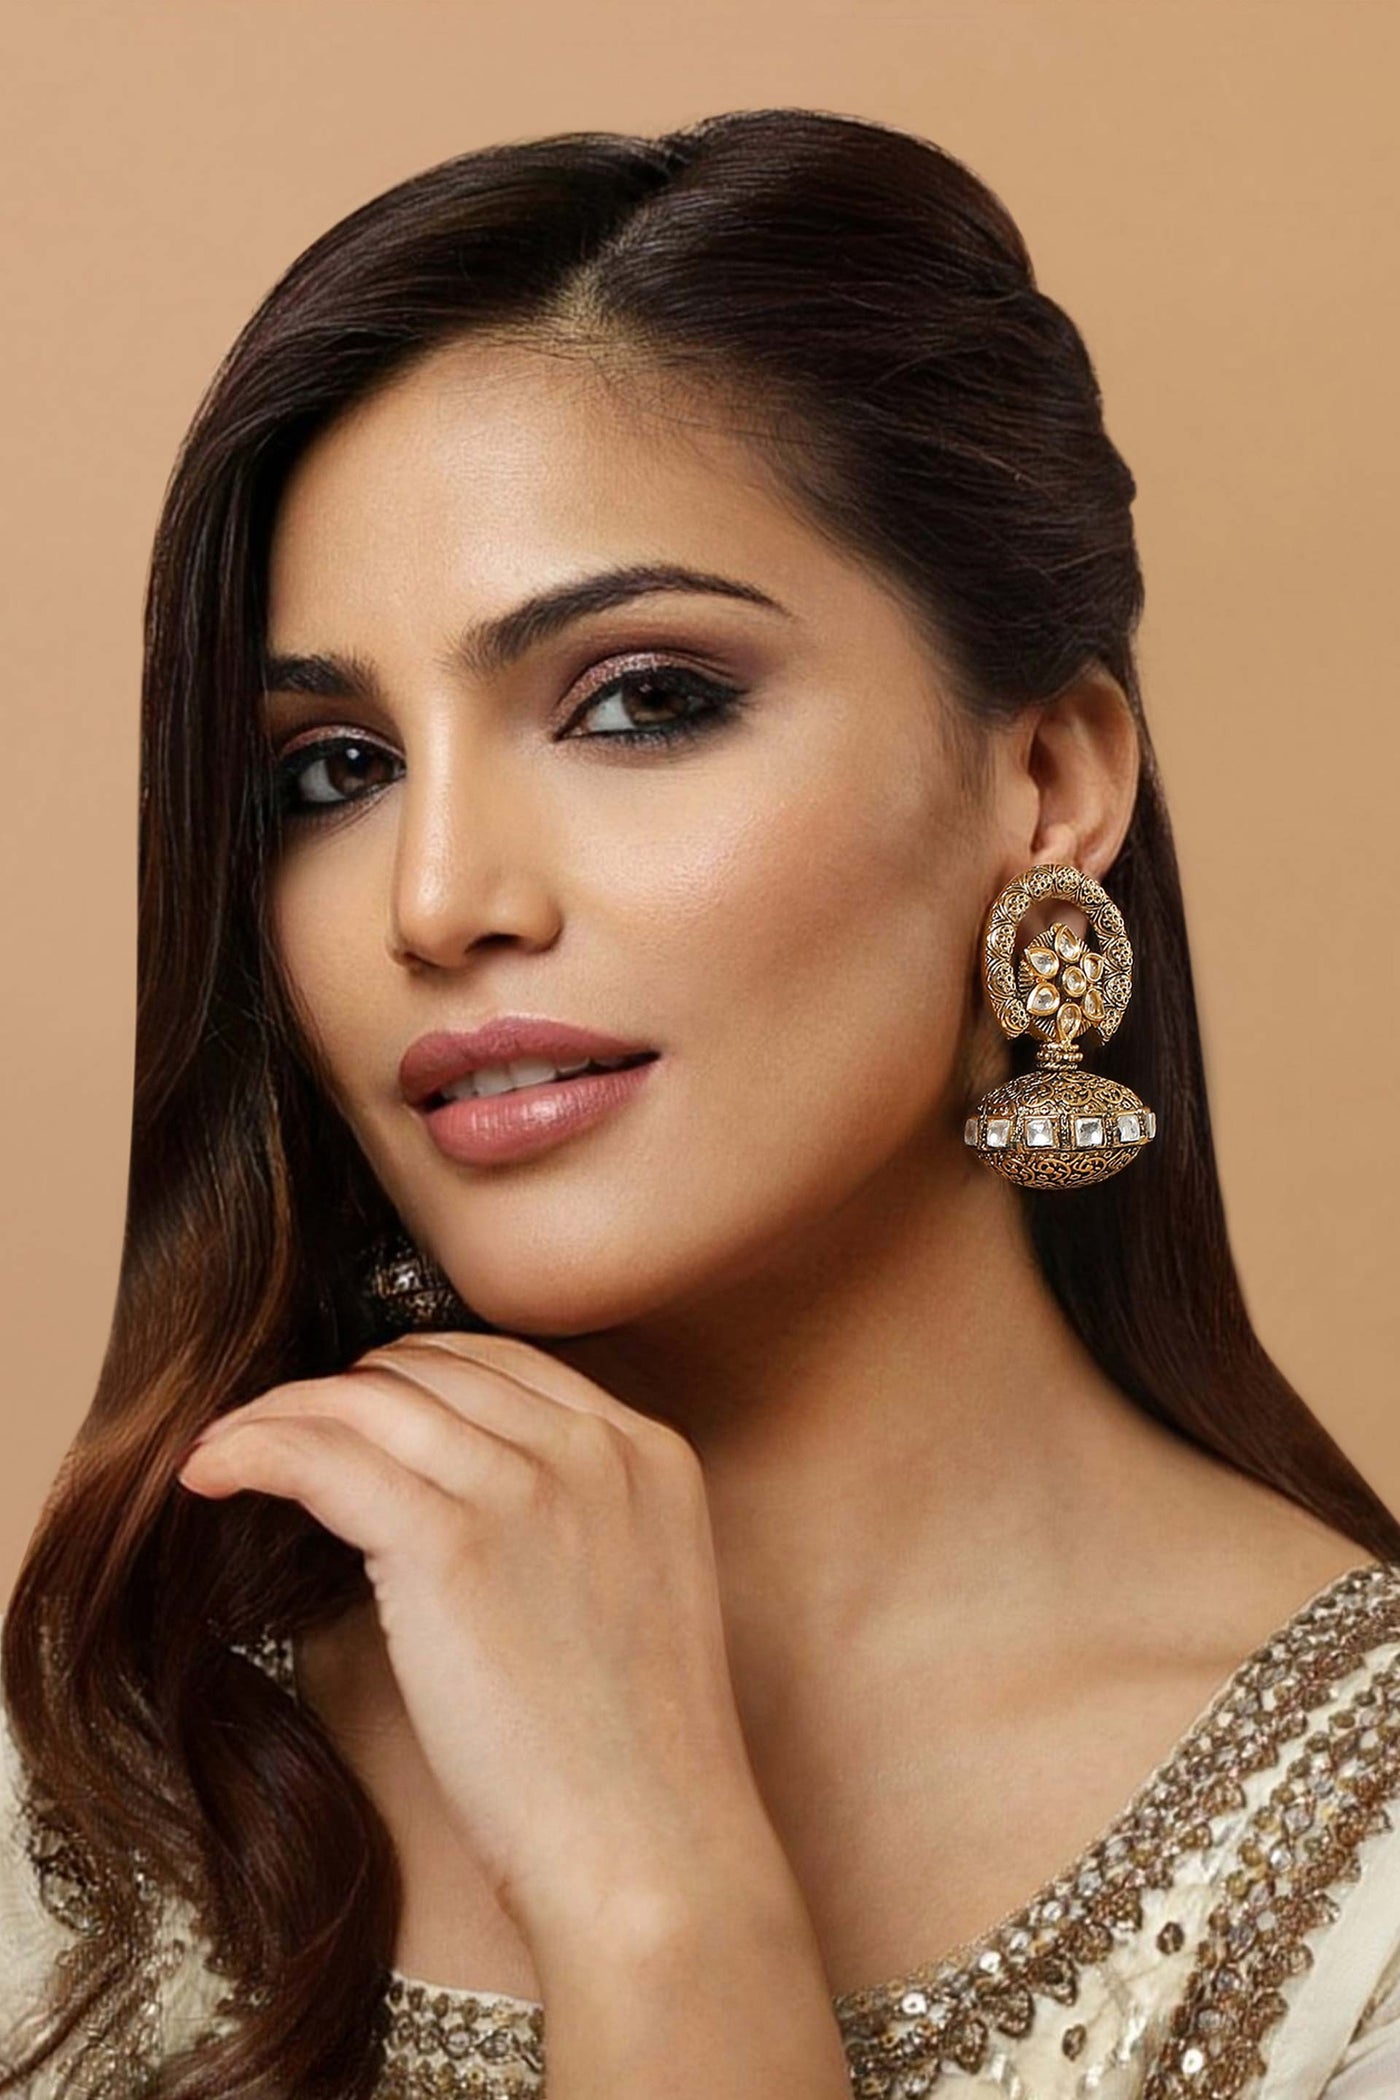 Tizora antique ethnic earrings gold and white fashion imitation jewellery indian designer wear online shopping melange singapore